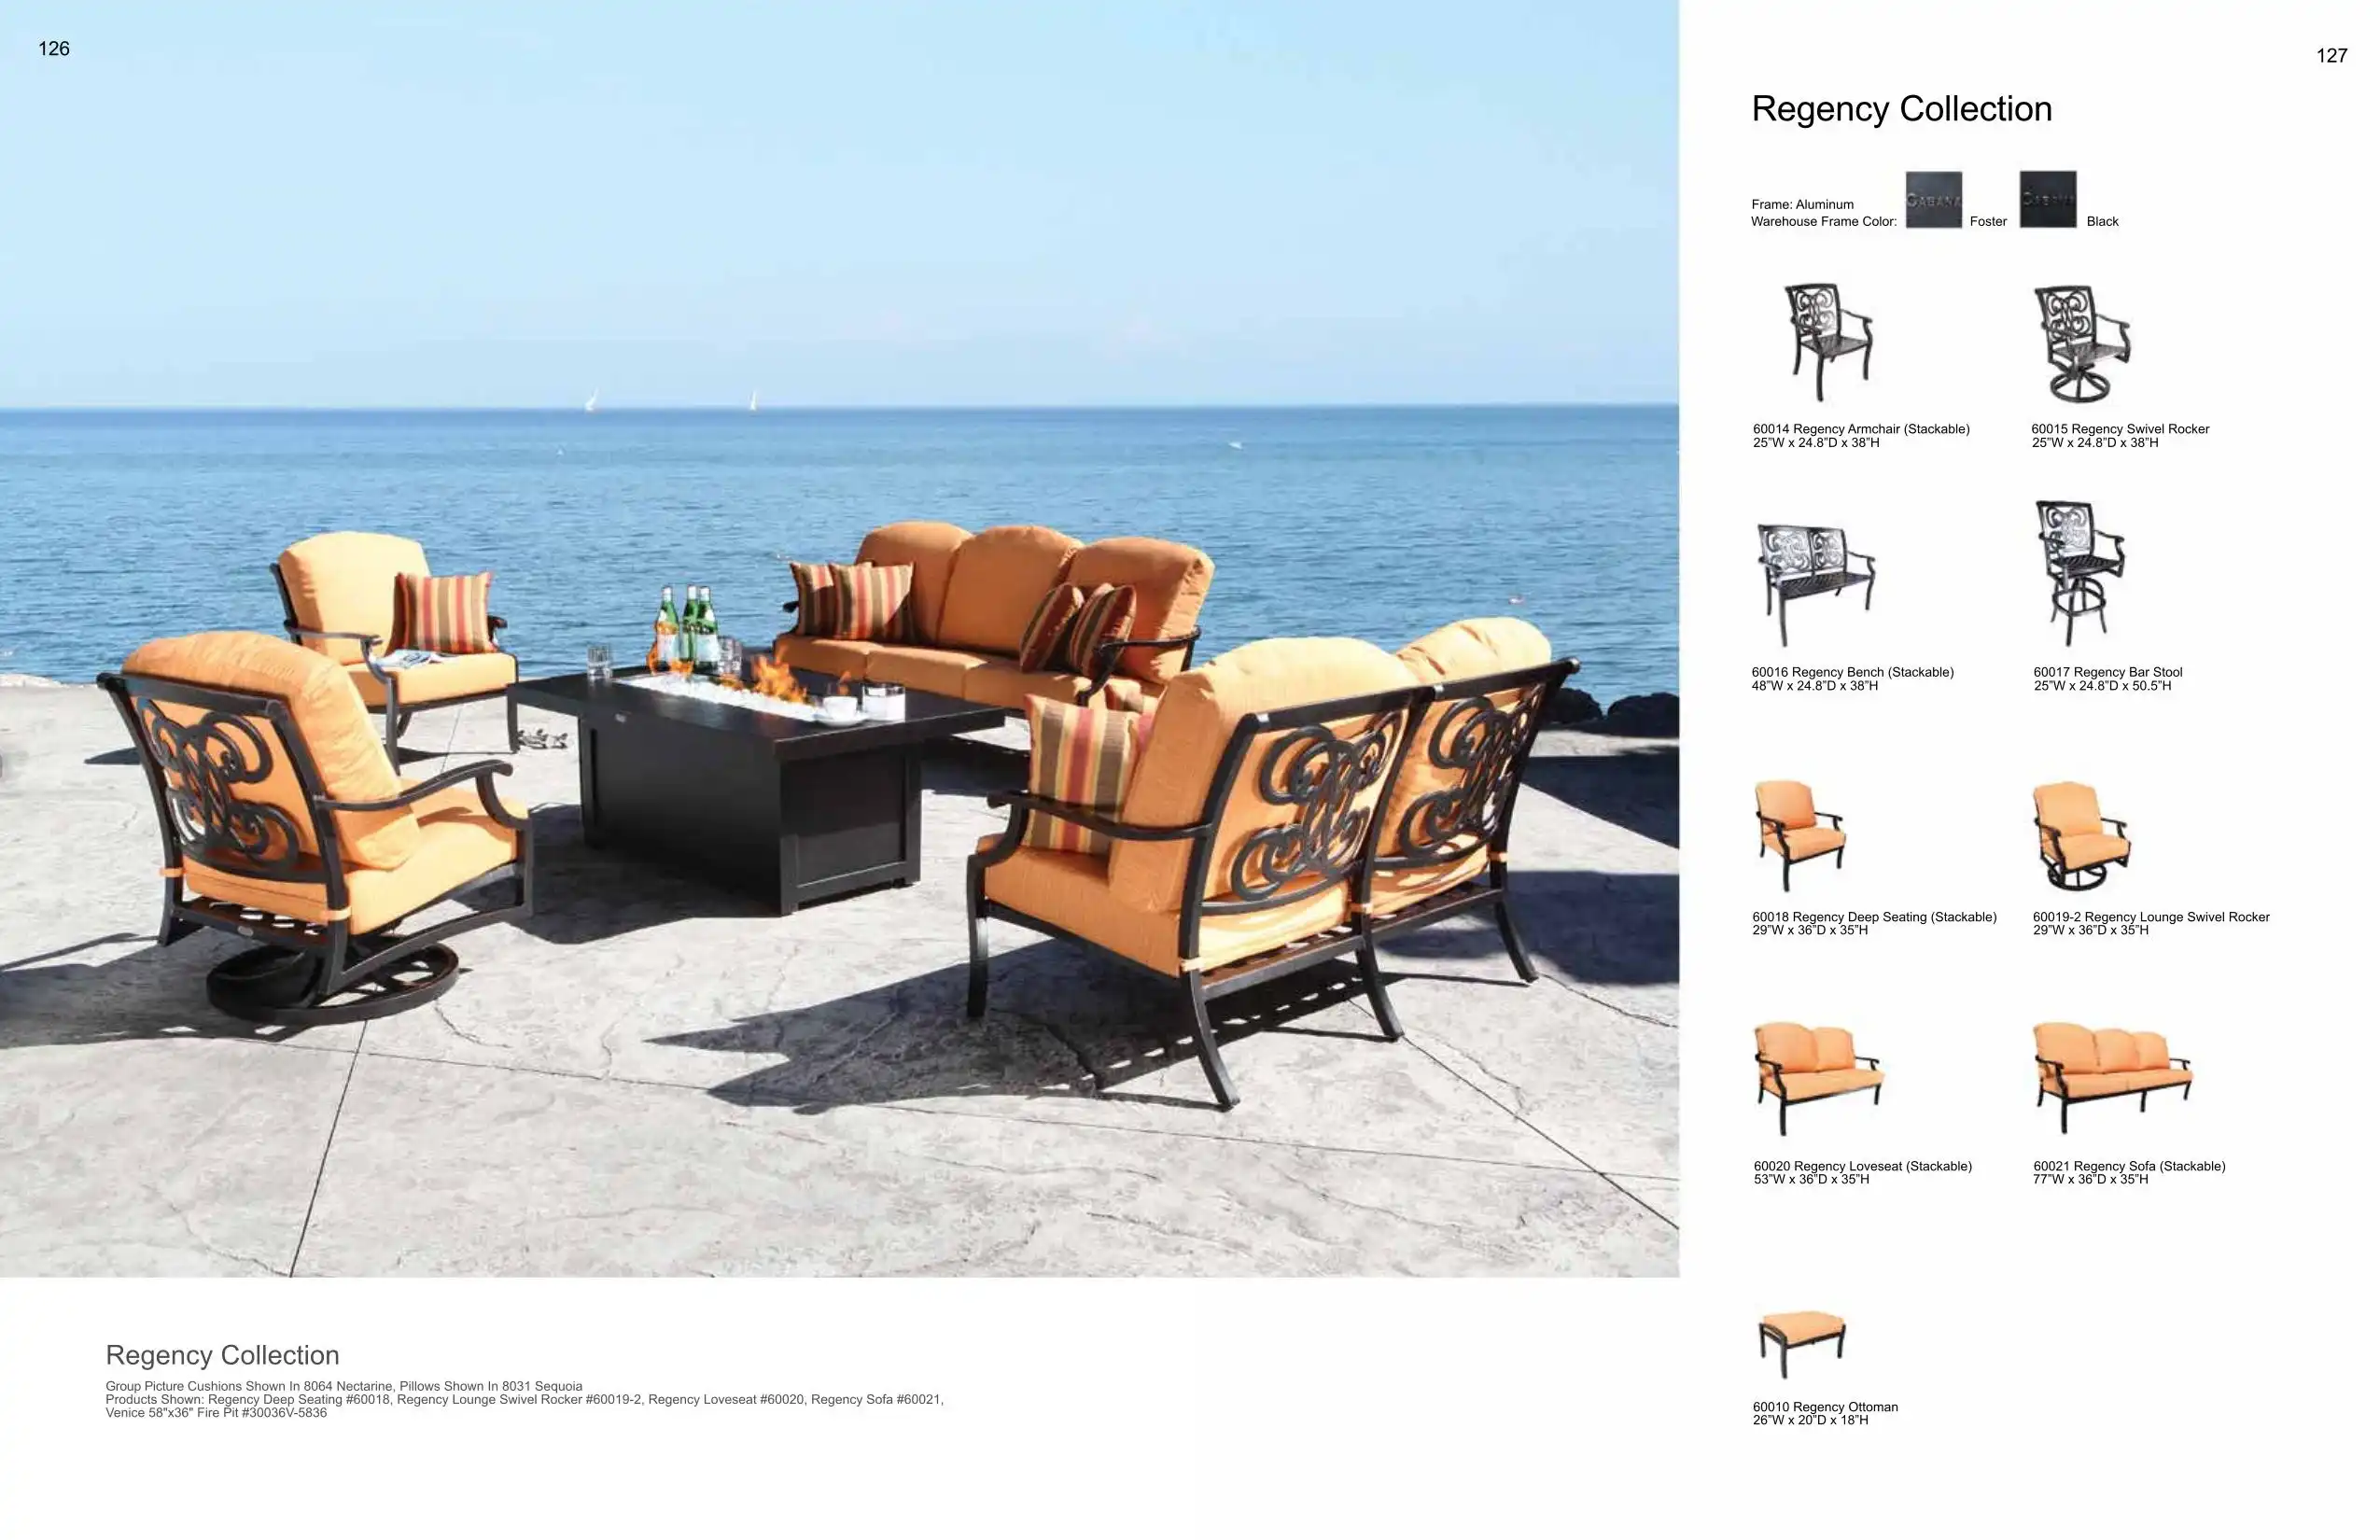 REGENCY Sofa (ALUMINUM) Collection(s) by Cabana Coast 